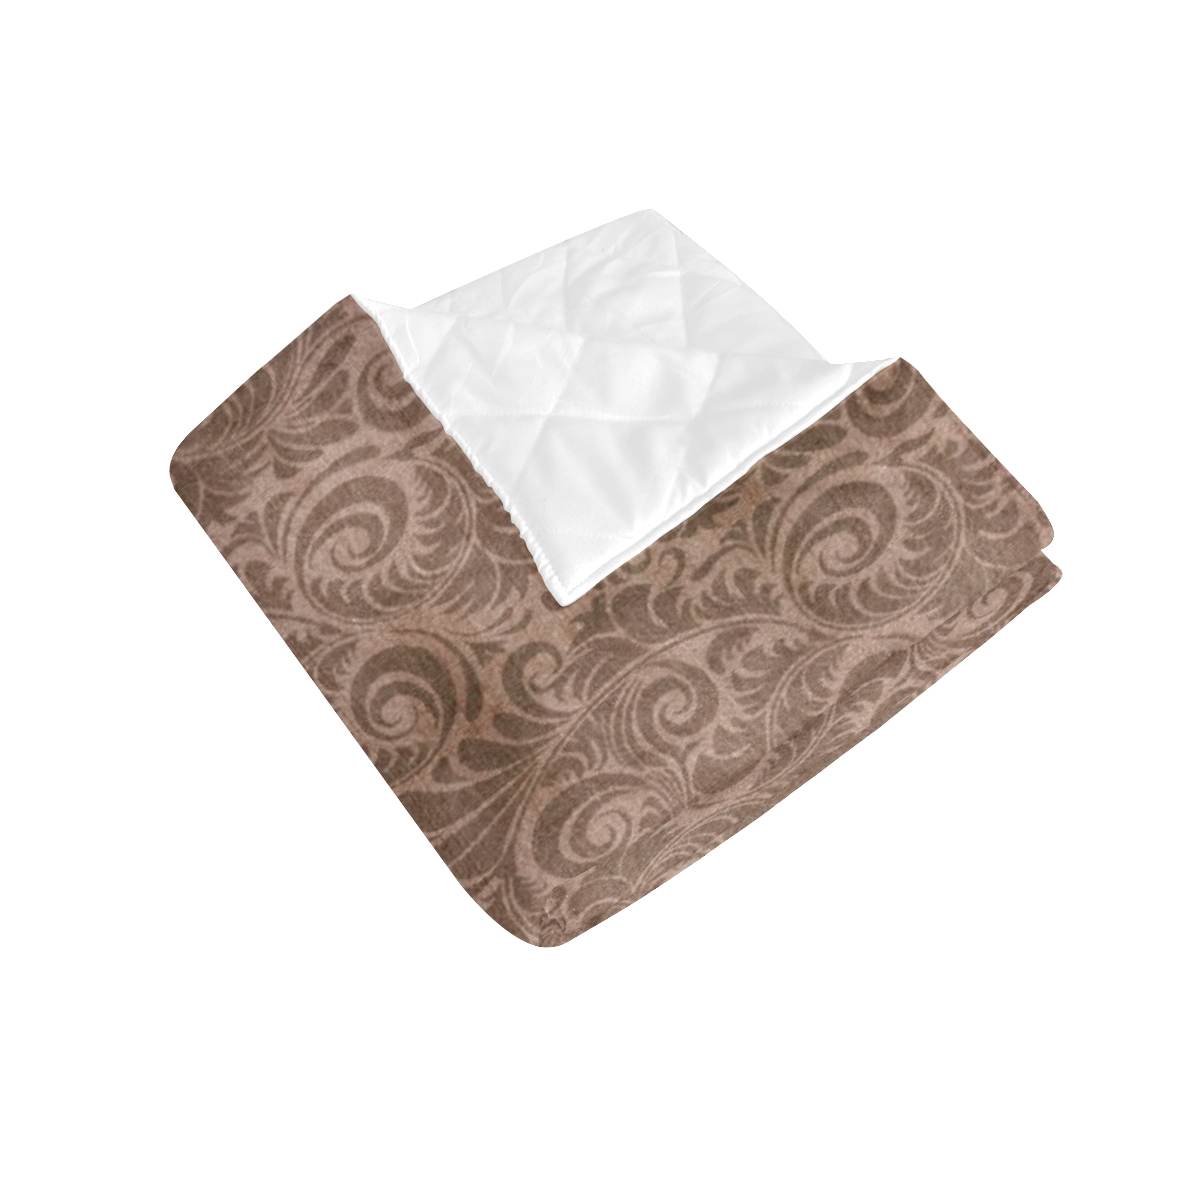 Denim with vintage floral pattern, beige brown Quilt 50"x60"